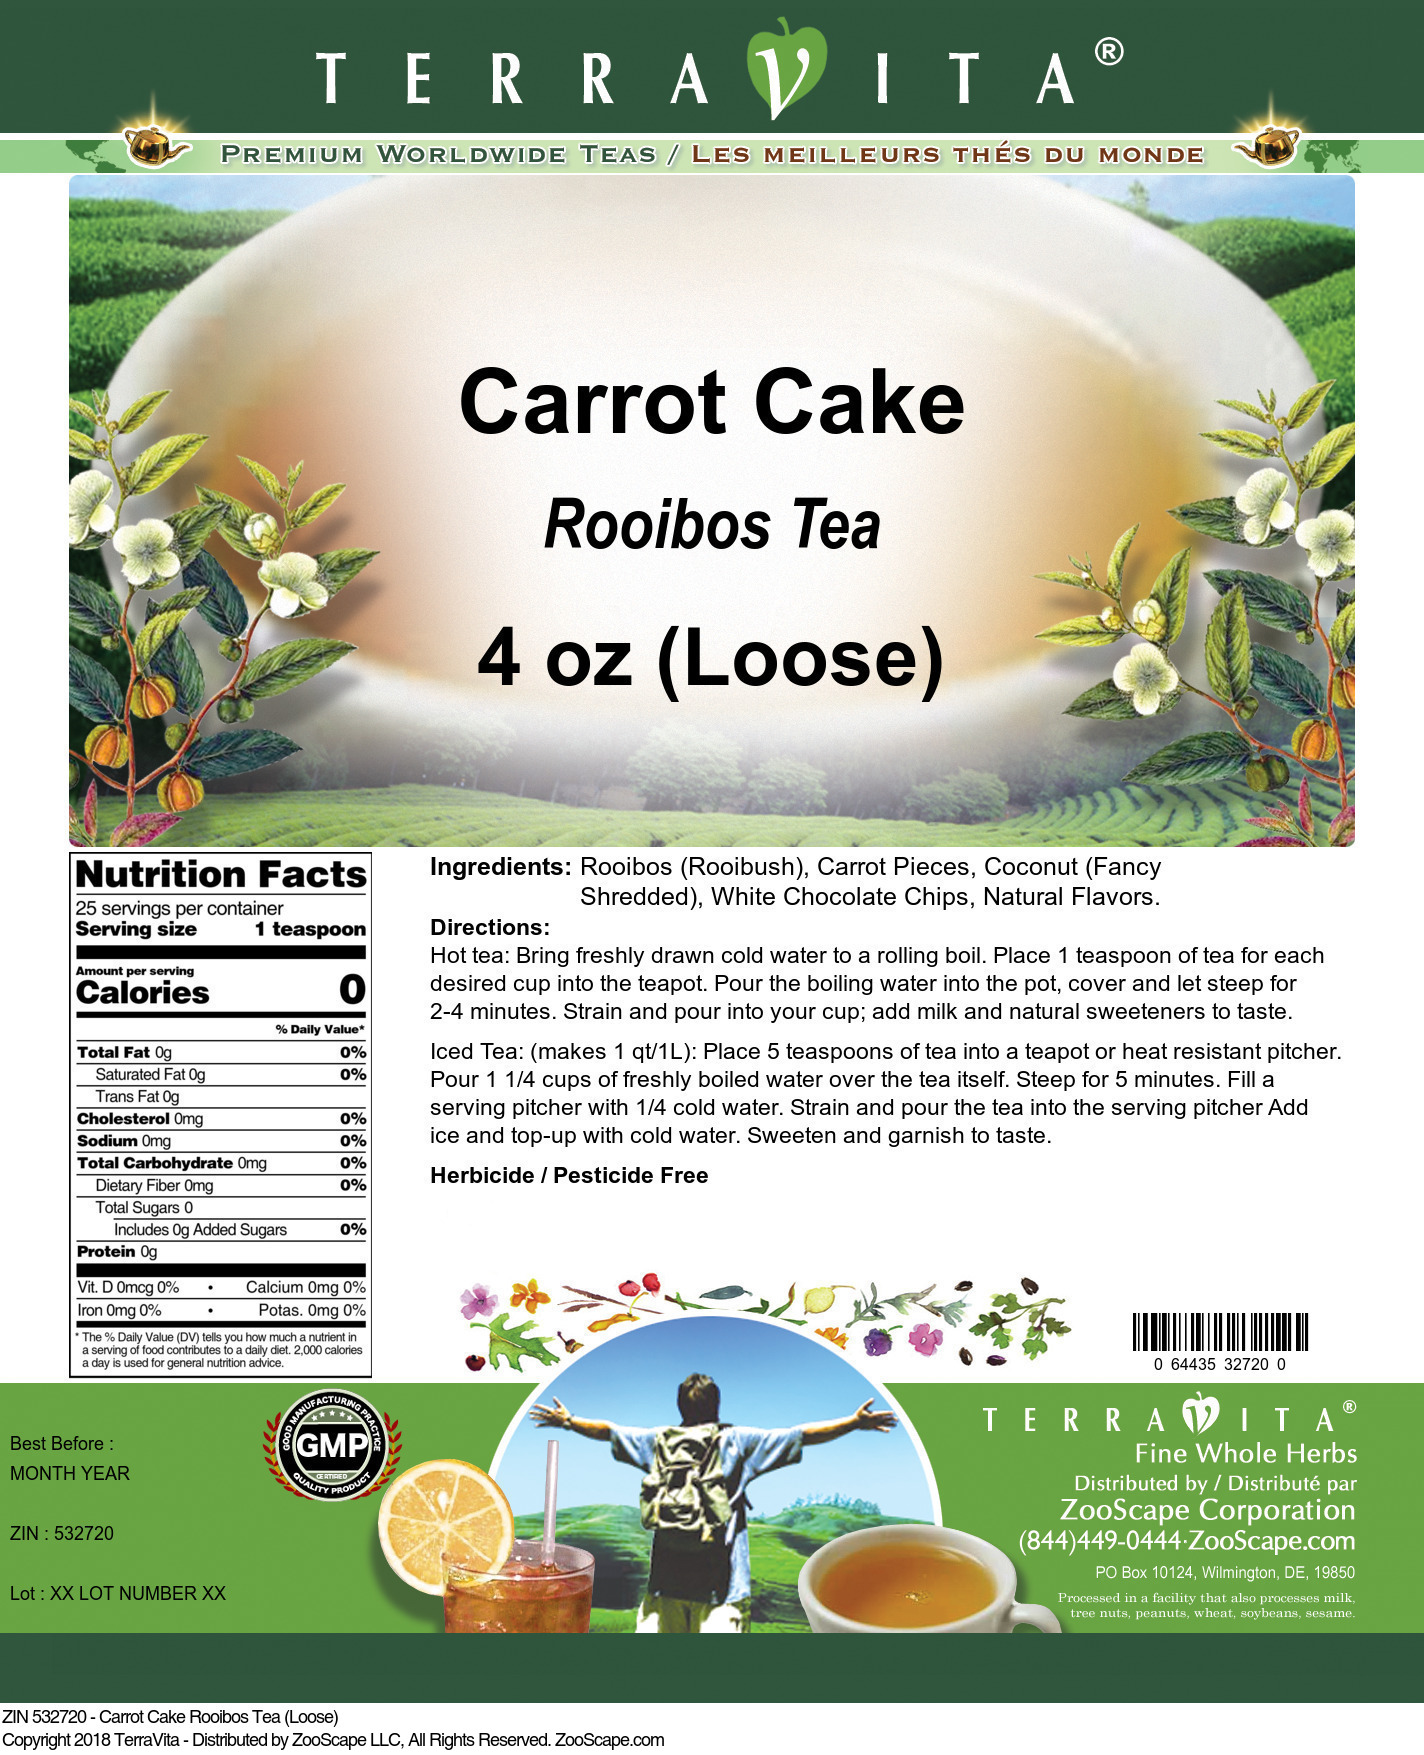 Carrot Cake Rooibos Tea (Loose) - Label